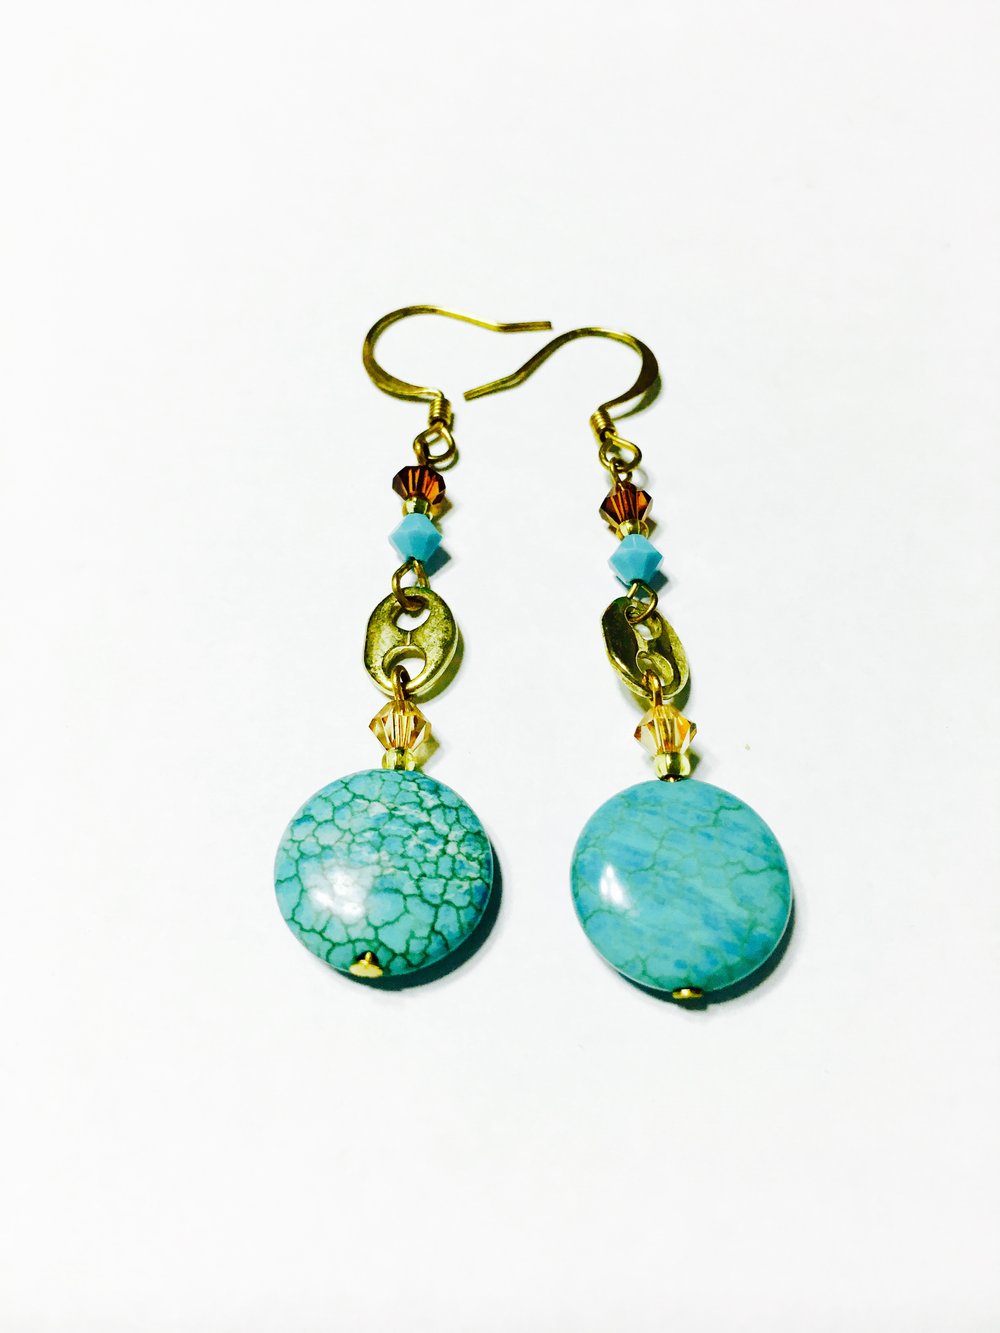 Image of Turquoise Style Dangle Earrings